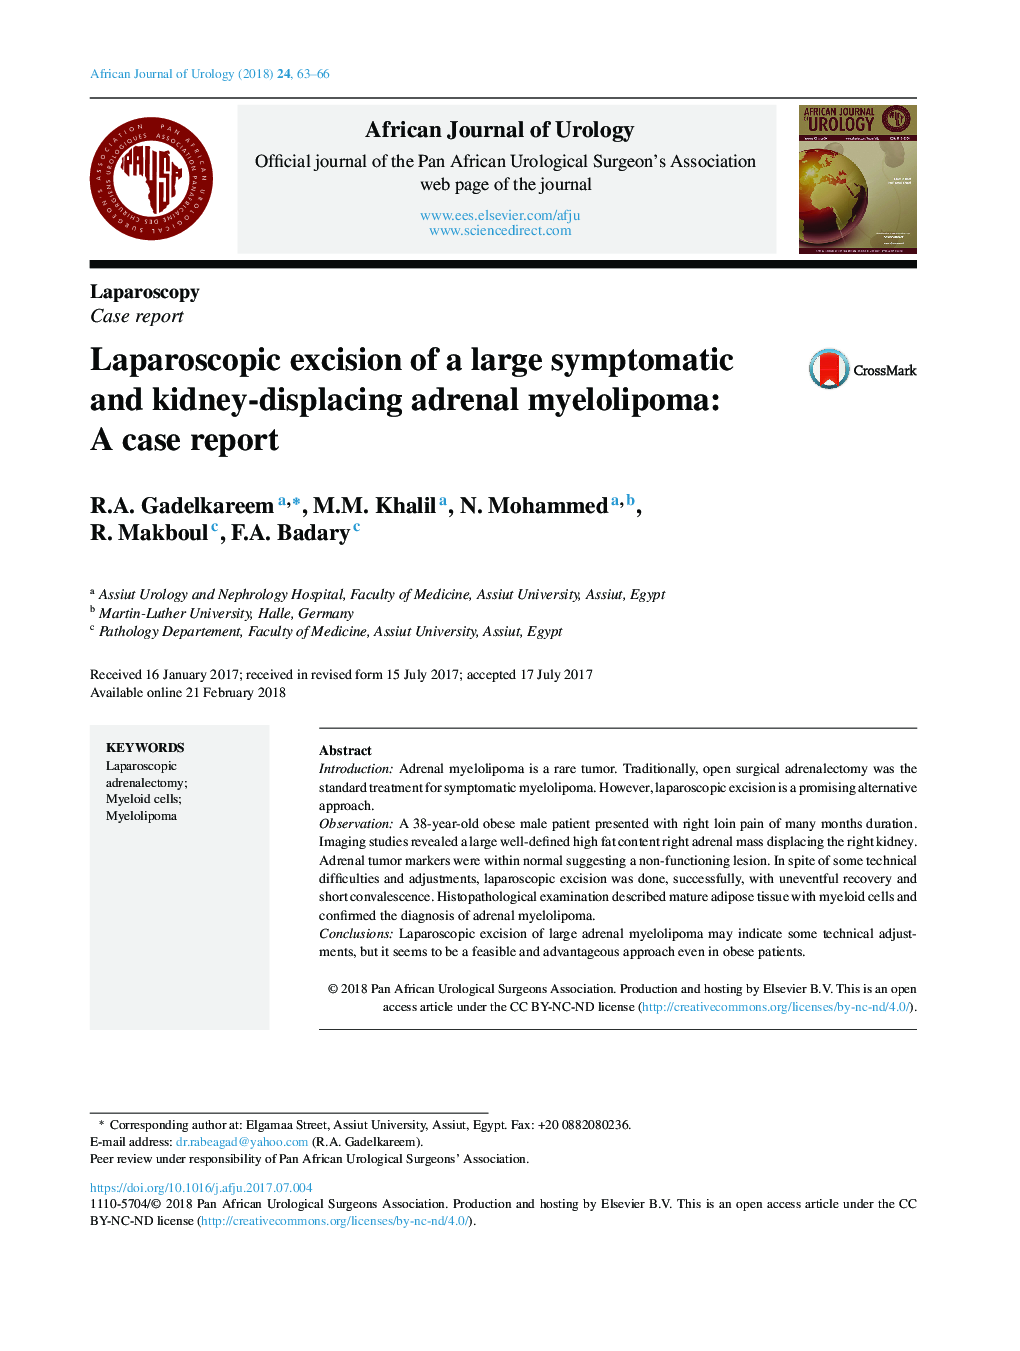 برداشتن لاپاروسکوپی یک میلولپوما آدرنال علامتدار و کلی عوض می شود: یک گزارش مورد 